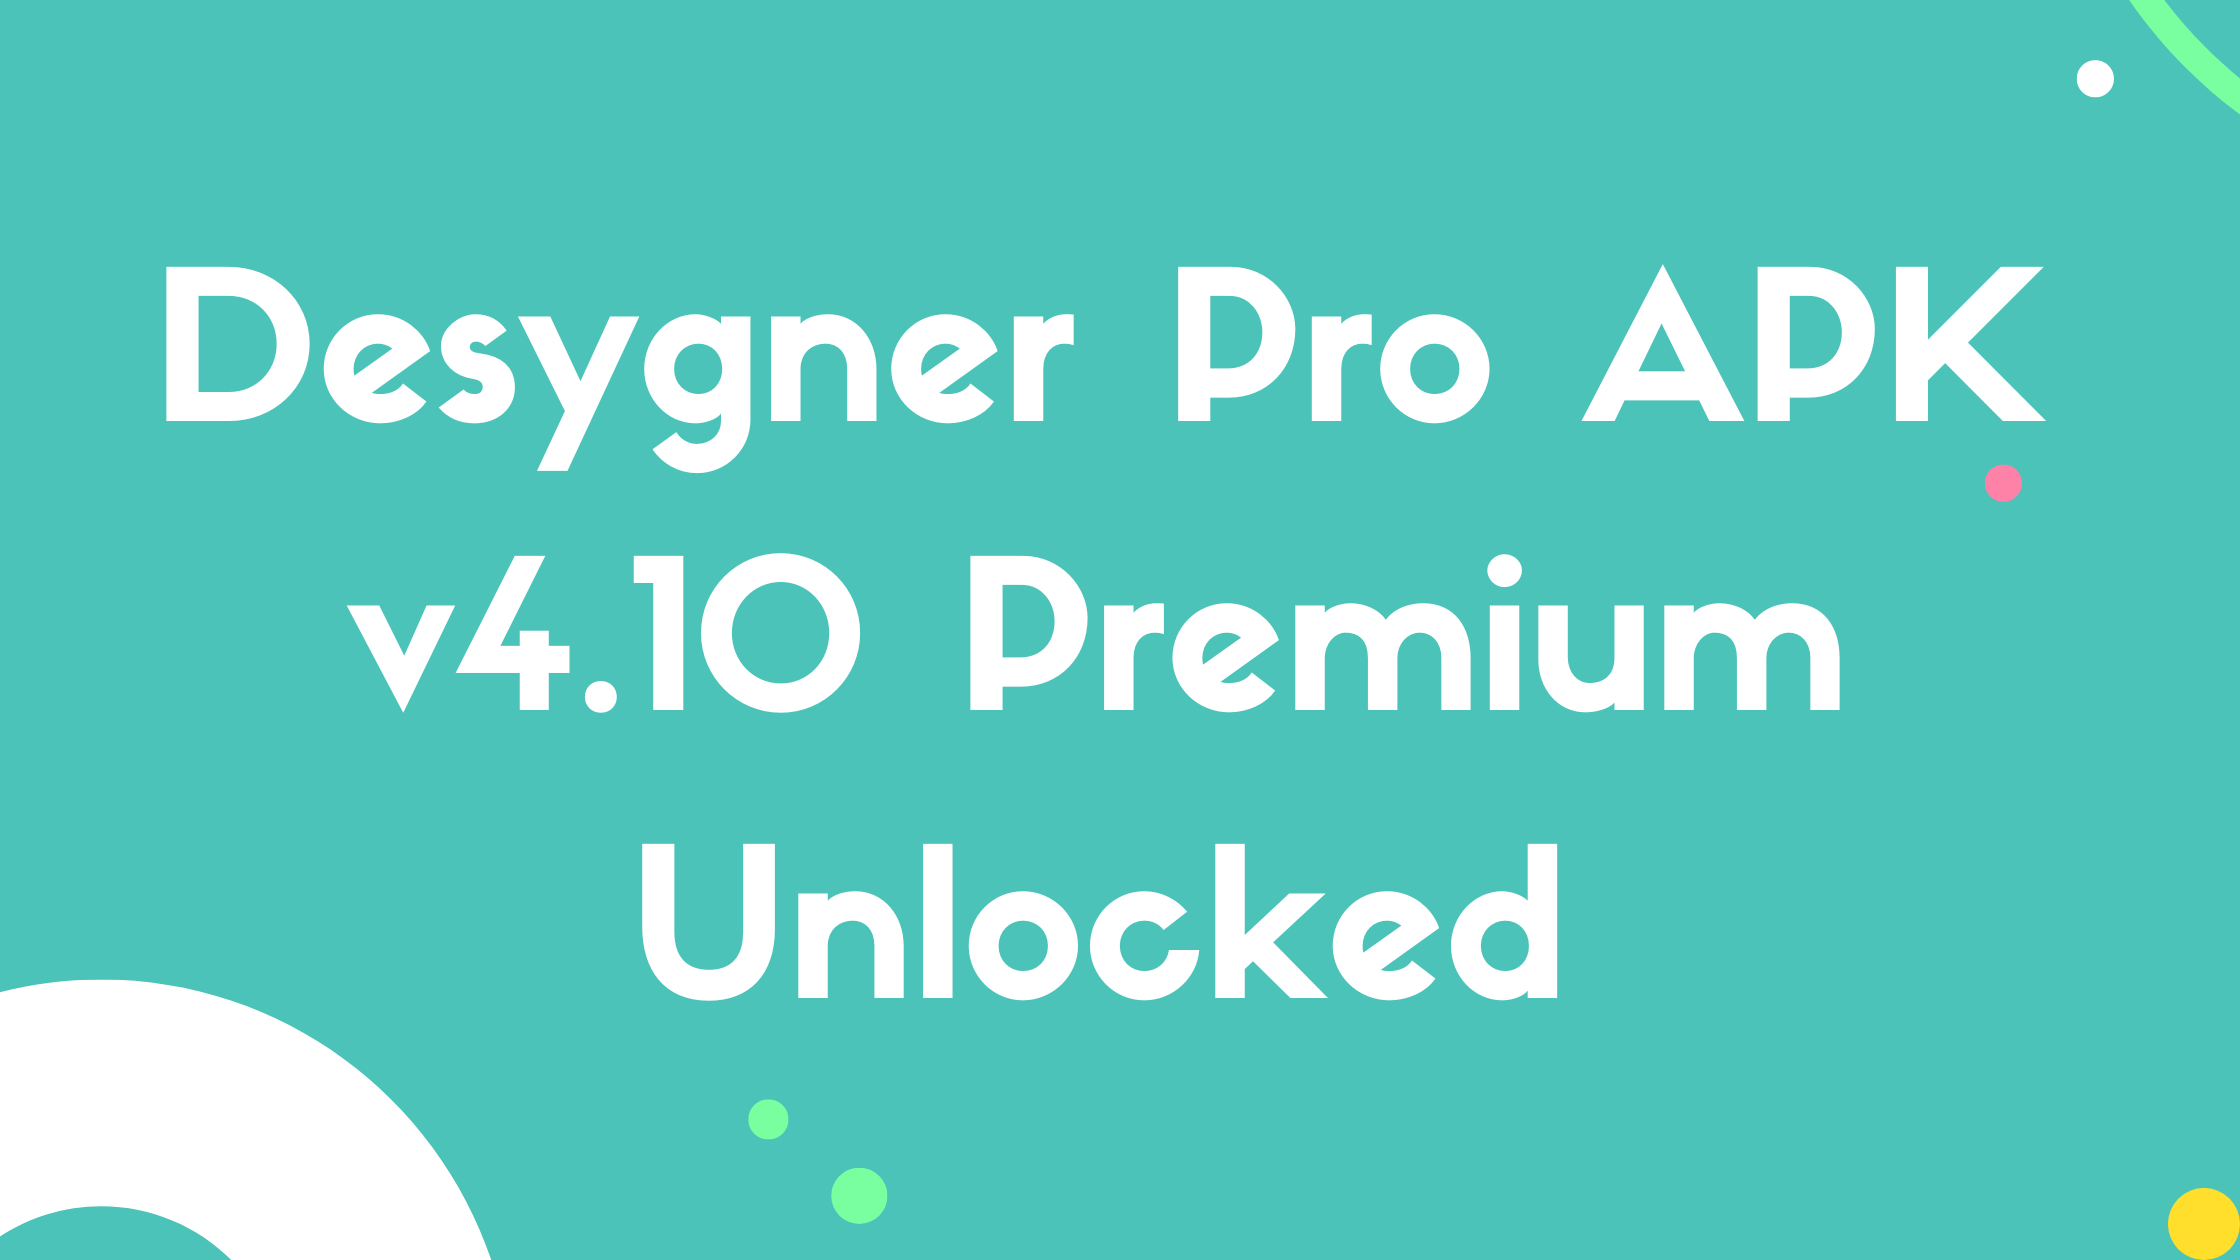 Desygner Pro APK v4.10 Premium Unlocked